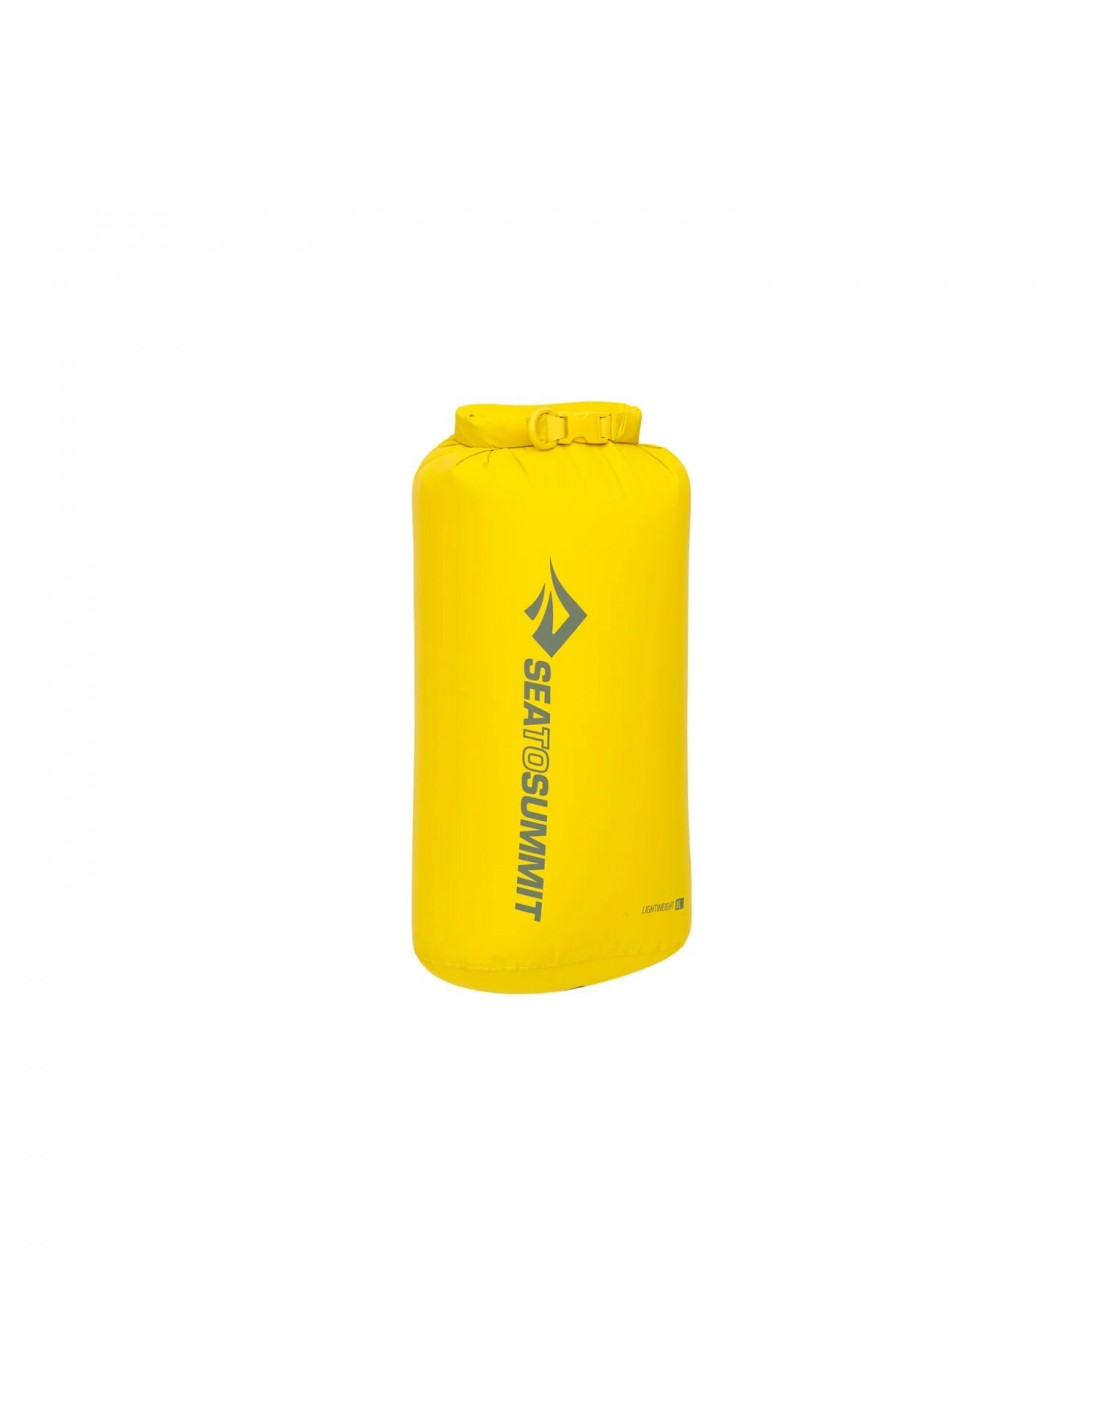 Sea To Summit Lightweight Dry Bag, 8 Liter, sulphur yellow von Sea To Summit